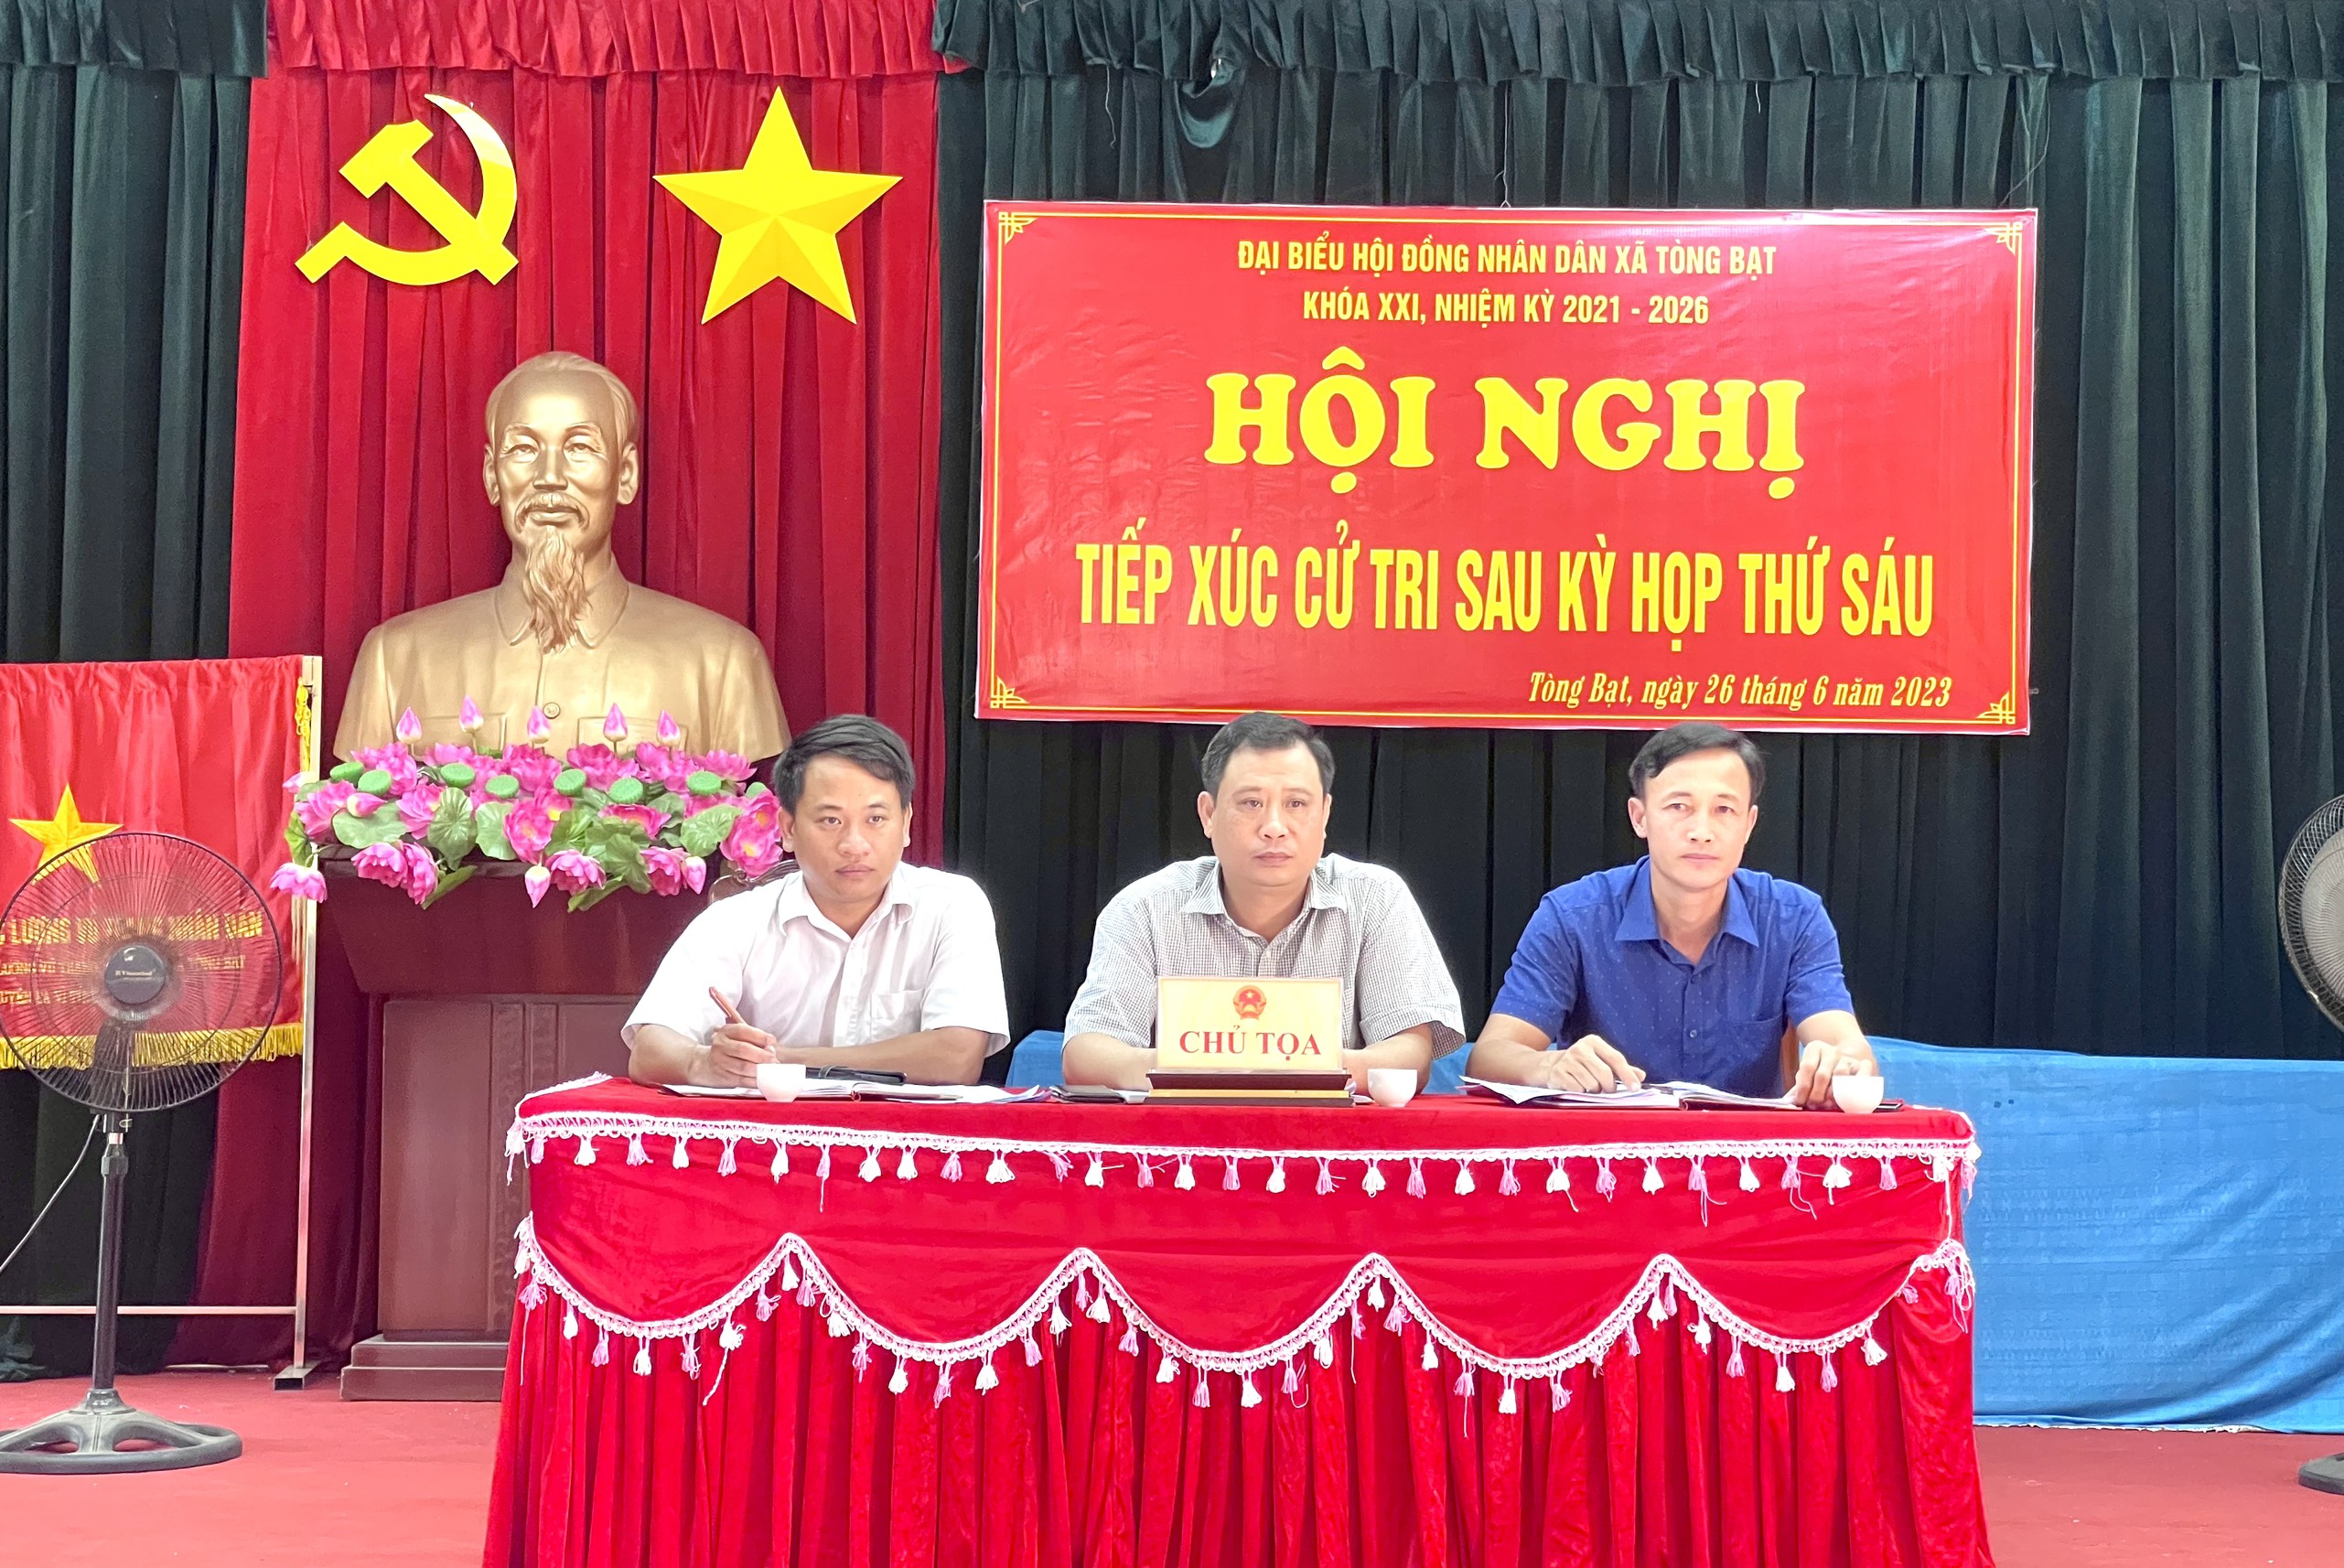 HĐND xã Tòng Bạt tổ chức Hội nghị tiếp xúc cử tri sau Kỳ họp thứ Sáu